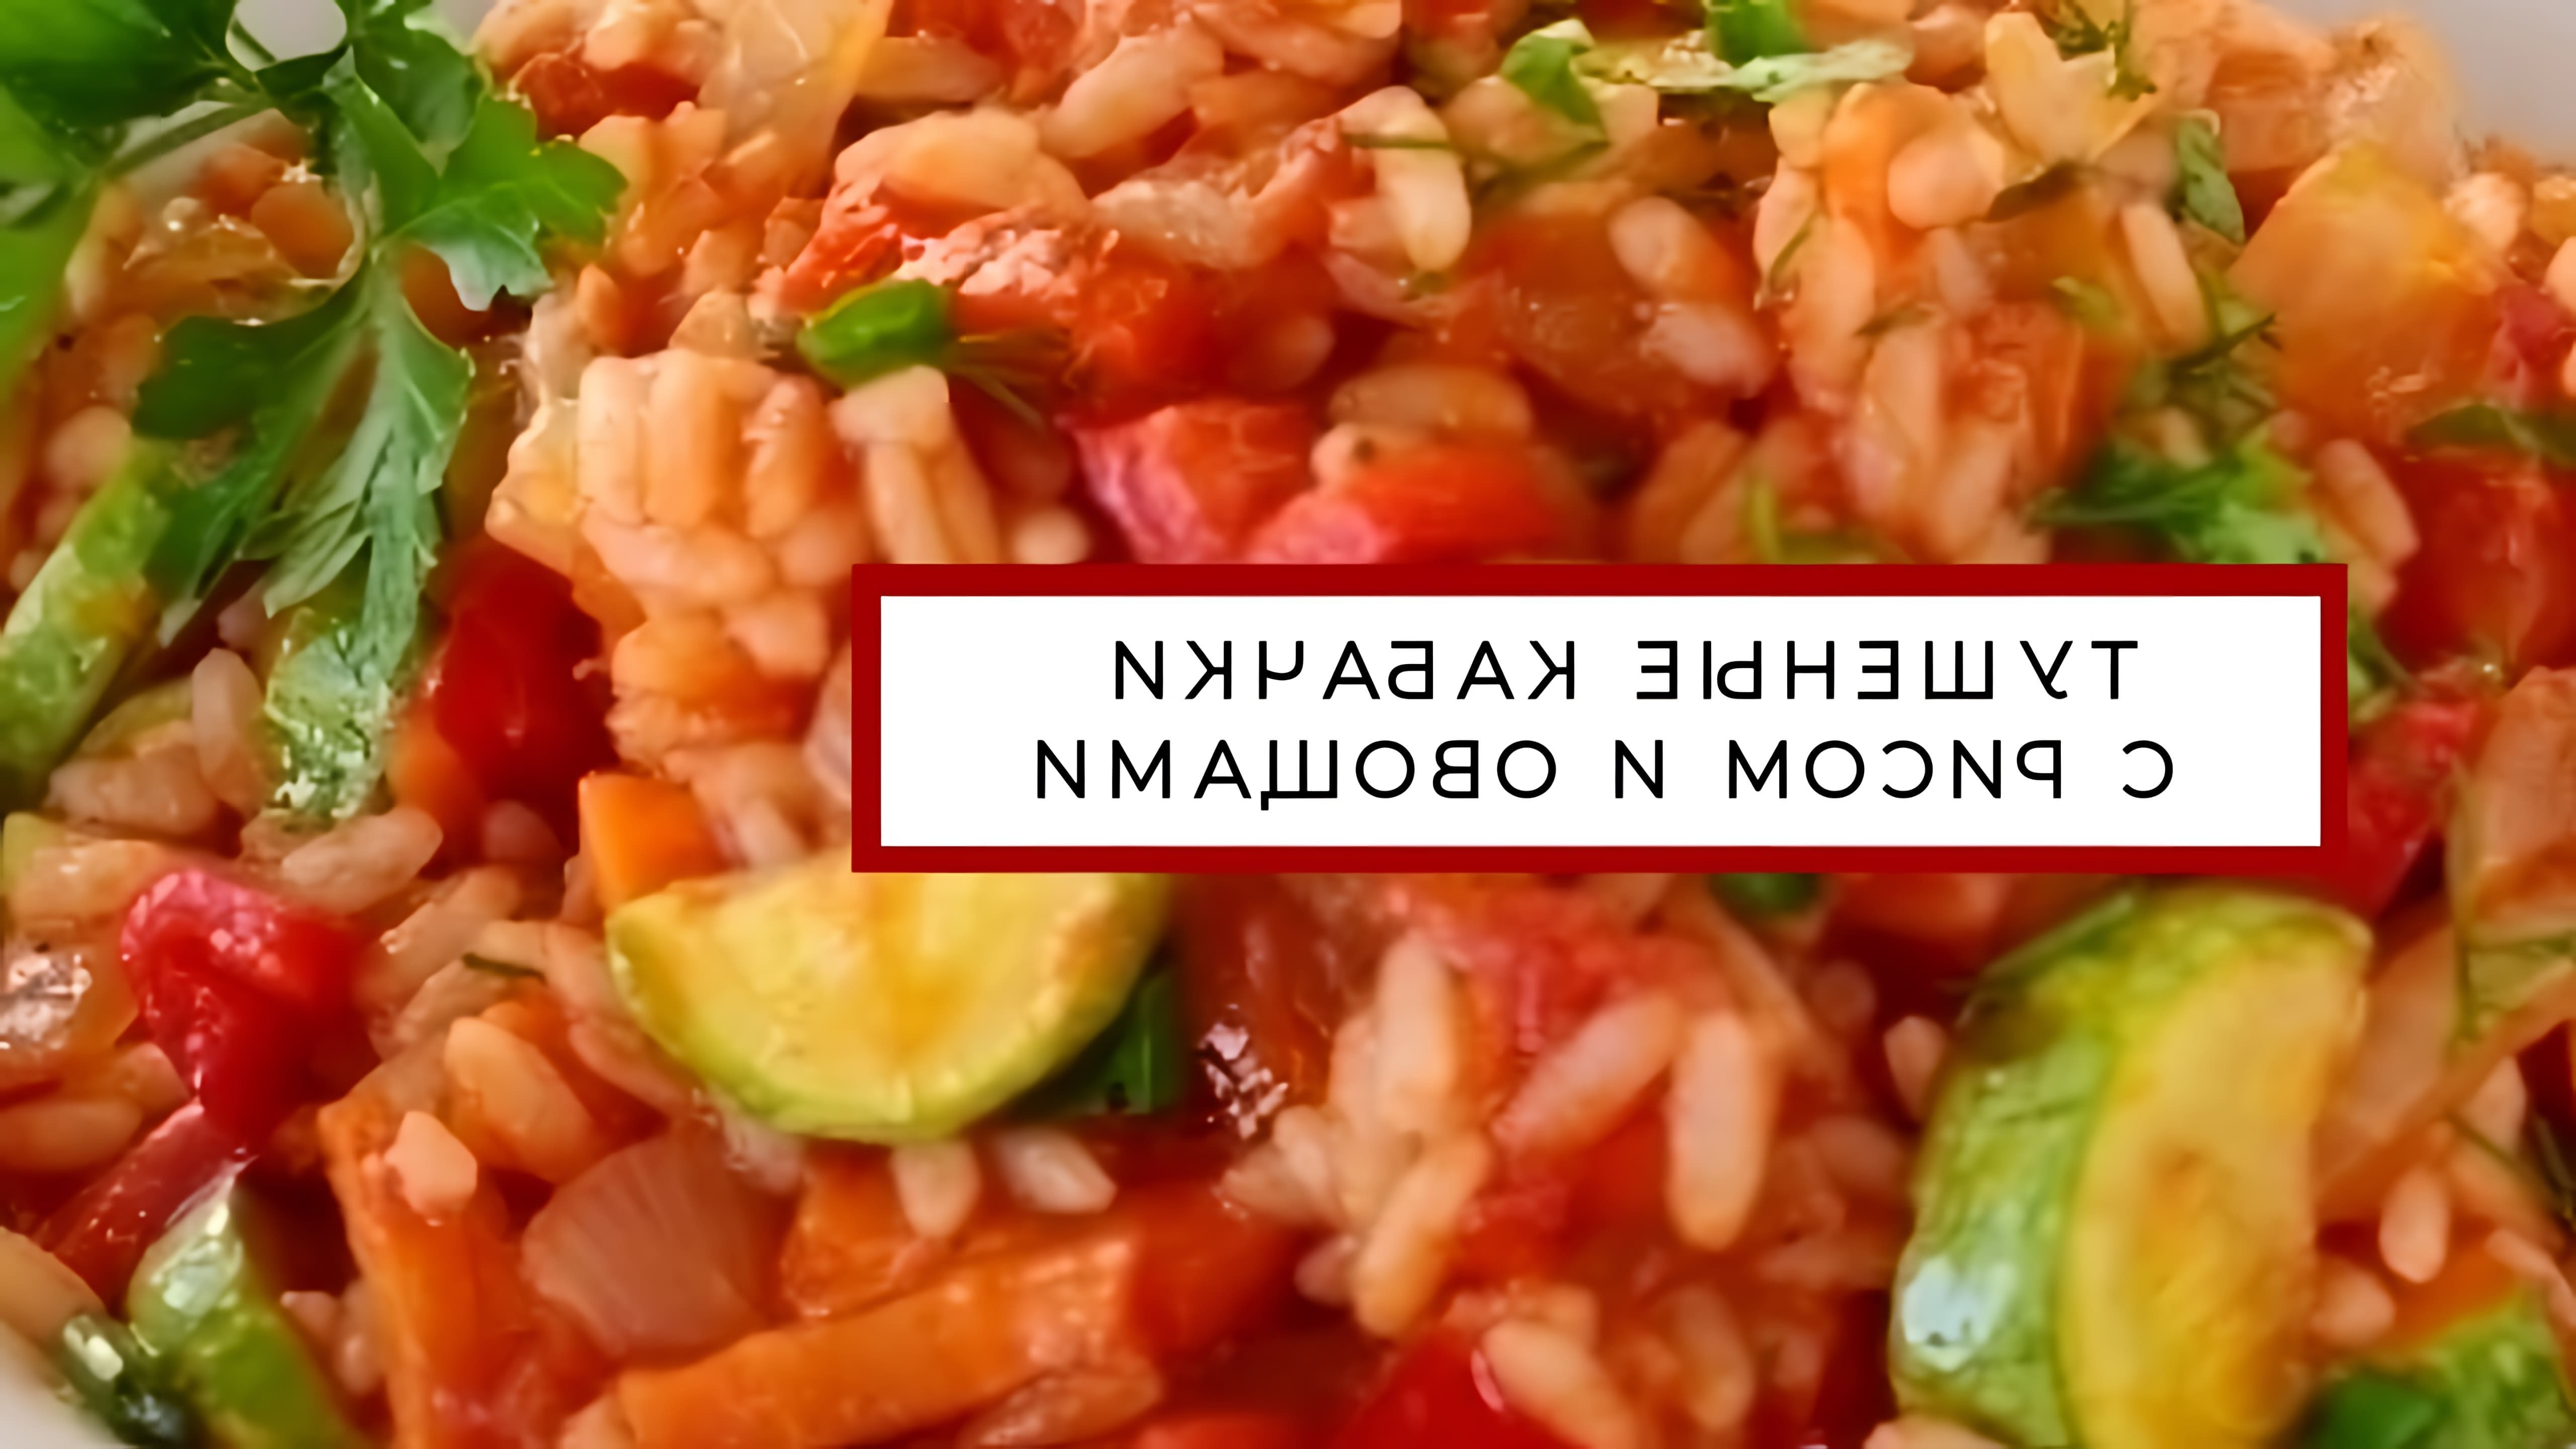 В этом видео демонстрируется рецепт тушеных кабачков с рисом и овощами